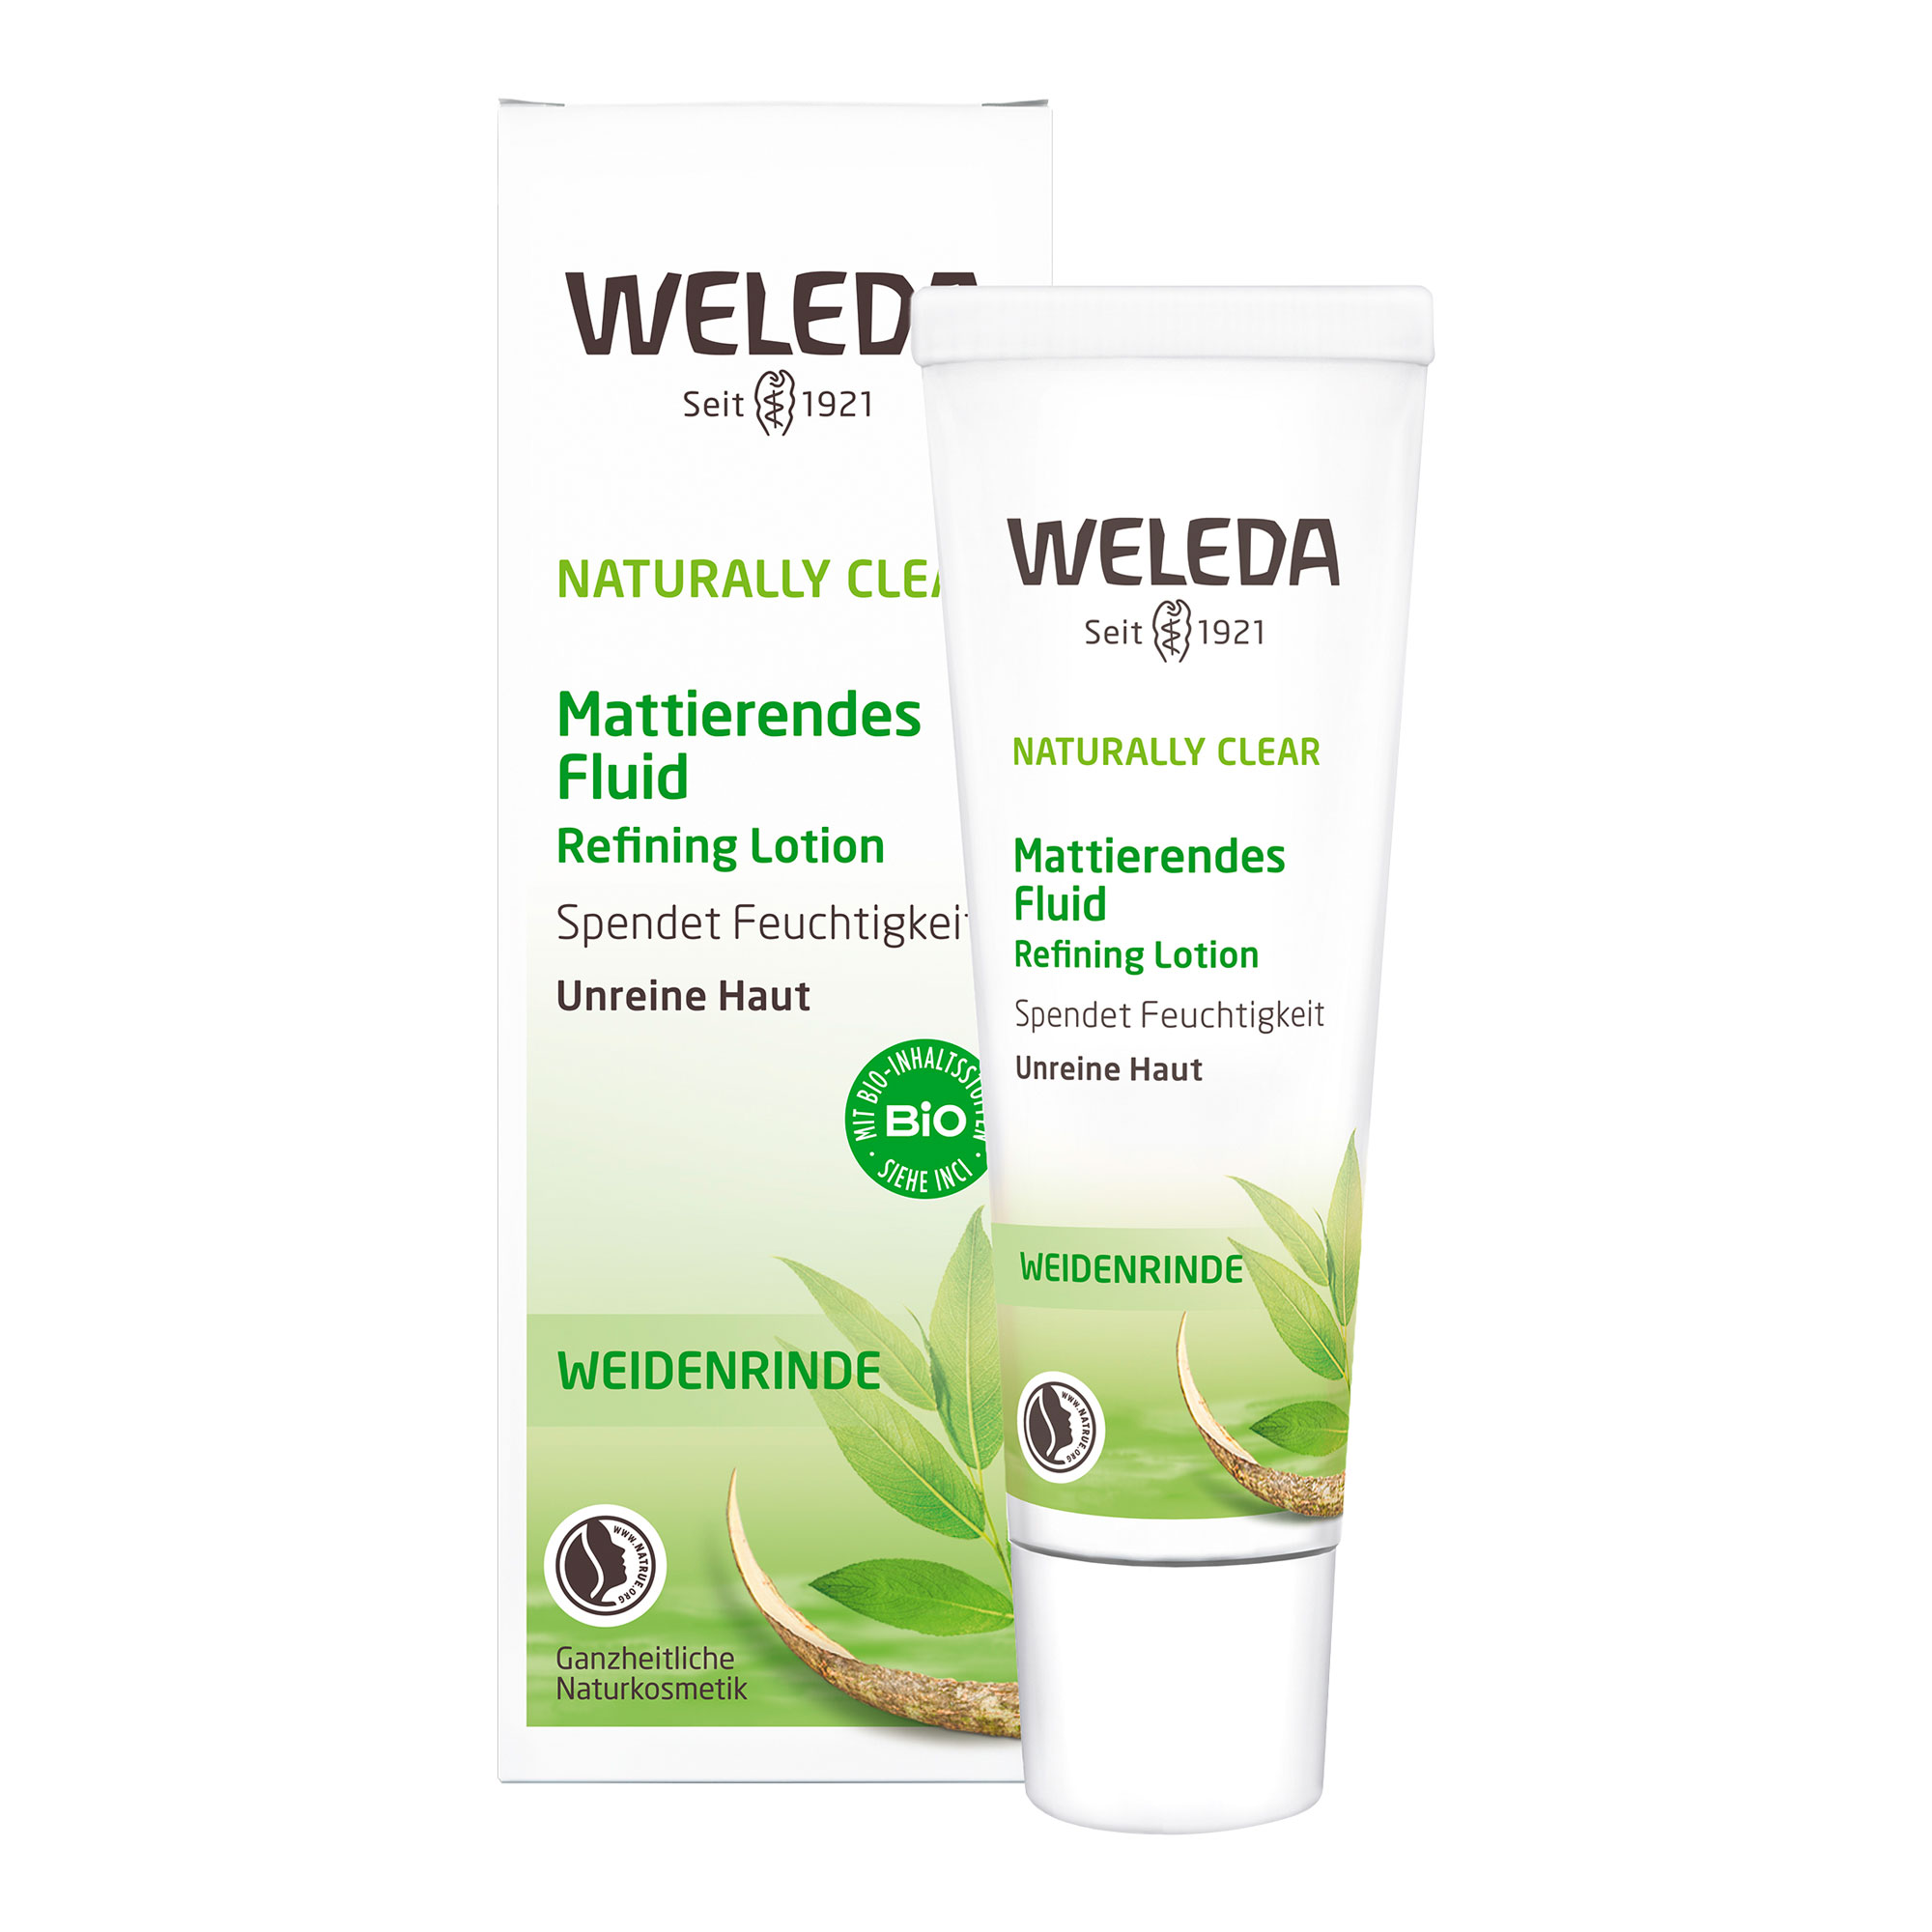 Mattierende Naturkosmetik Feuchtigkeitscreme für unreine Haut, reduziert Hautglanz & bekämpft Hautunreinheiten.